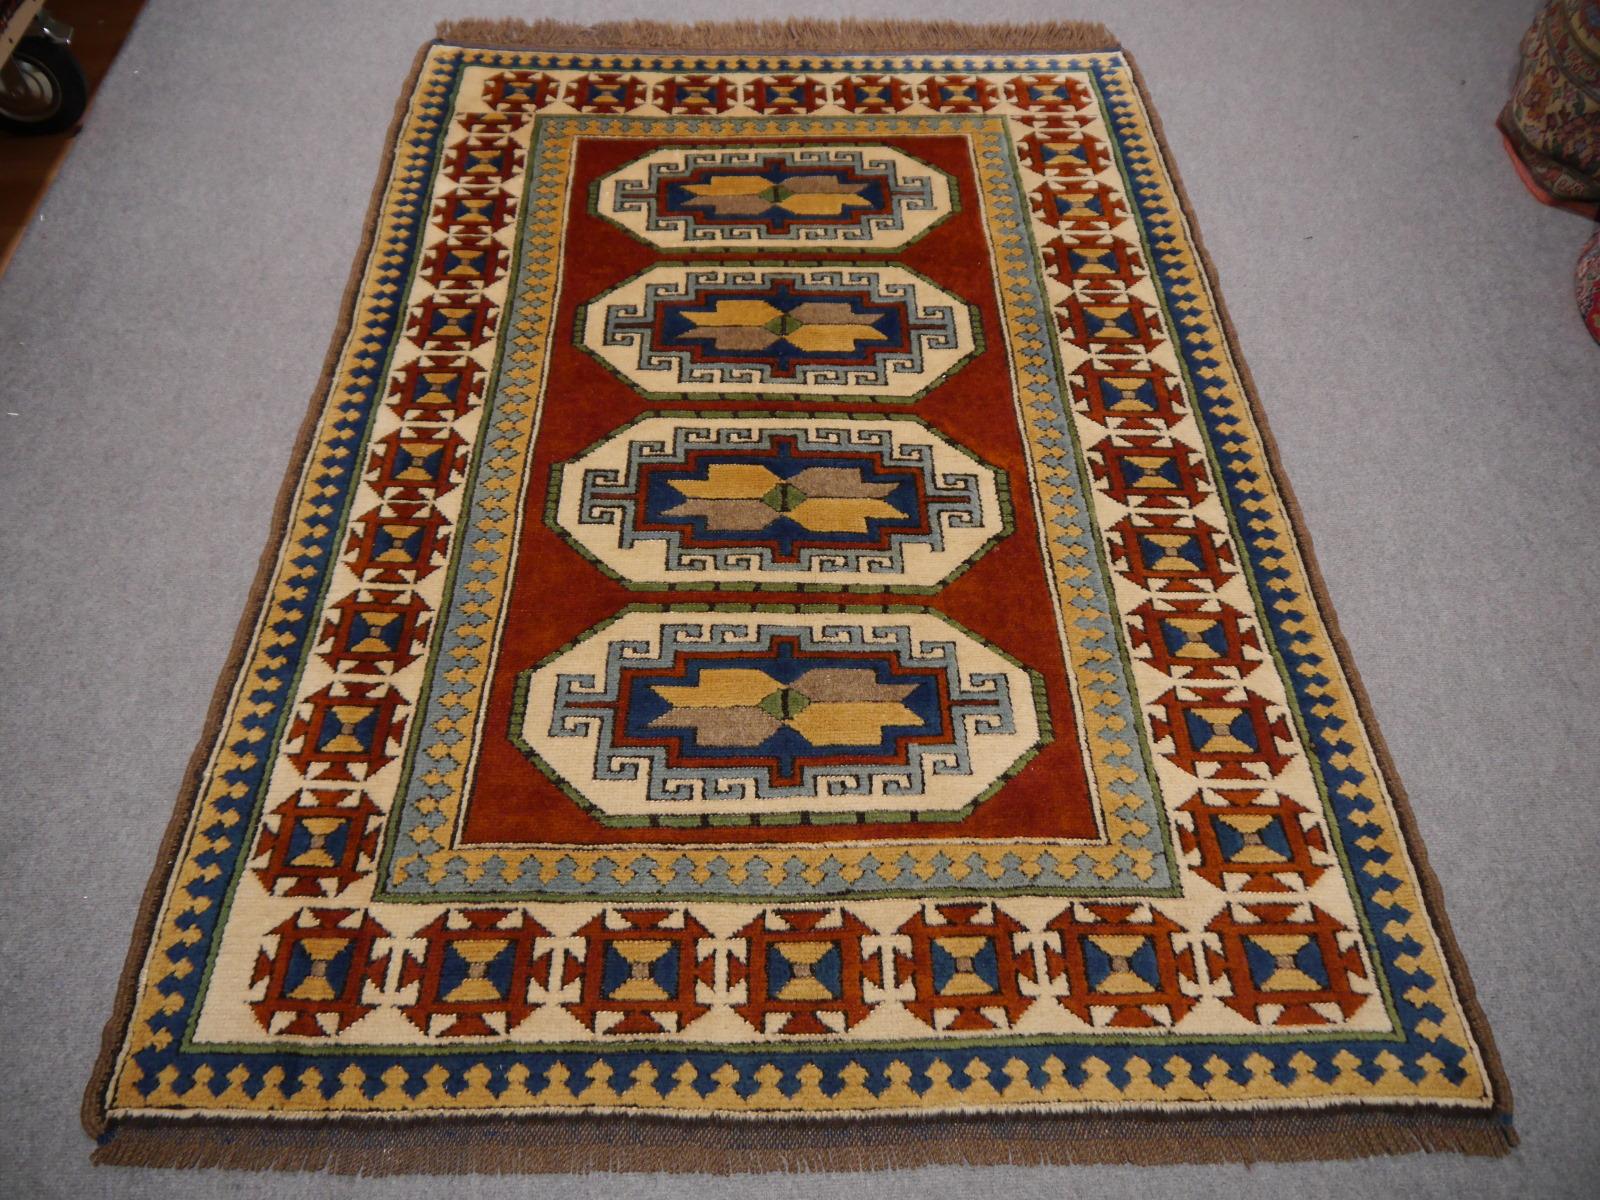 Wunderschöner türkischer Kazak Azeri Teppich Vintage mit kaukasischem Design - Djoharian Collection'S

Türkische Teppiche werden hauptsächlich aus feiner, handgesponnener Wolle hergestellt, 
Dieses wunderschöne und beeindruckende Exemplar stammt aus